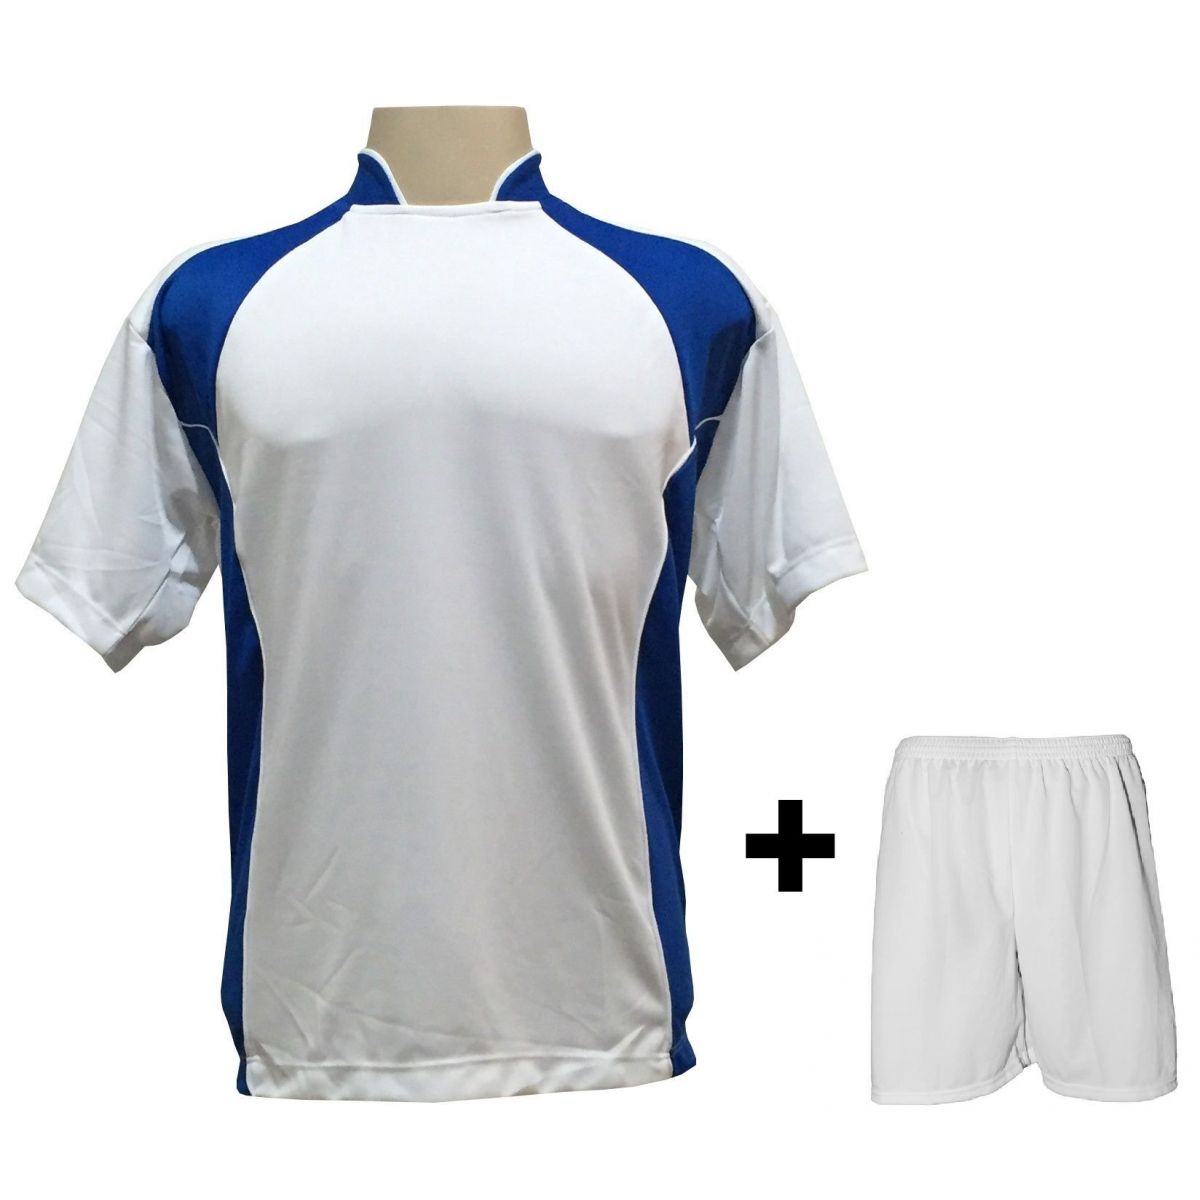 Uniforme Esportivo com 14 camisas modelo Suécia Branco/Royal + 14 calções modelo Madrid + 1 Goleiro + Brindes